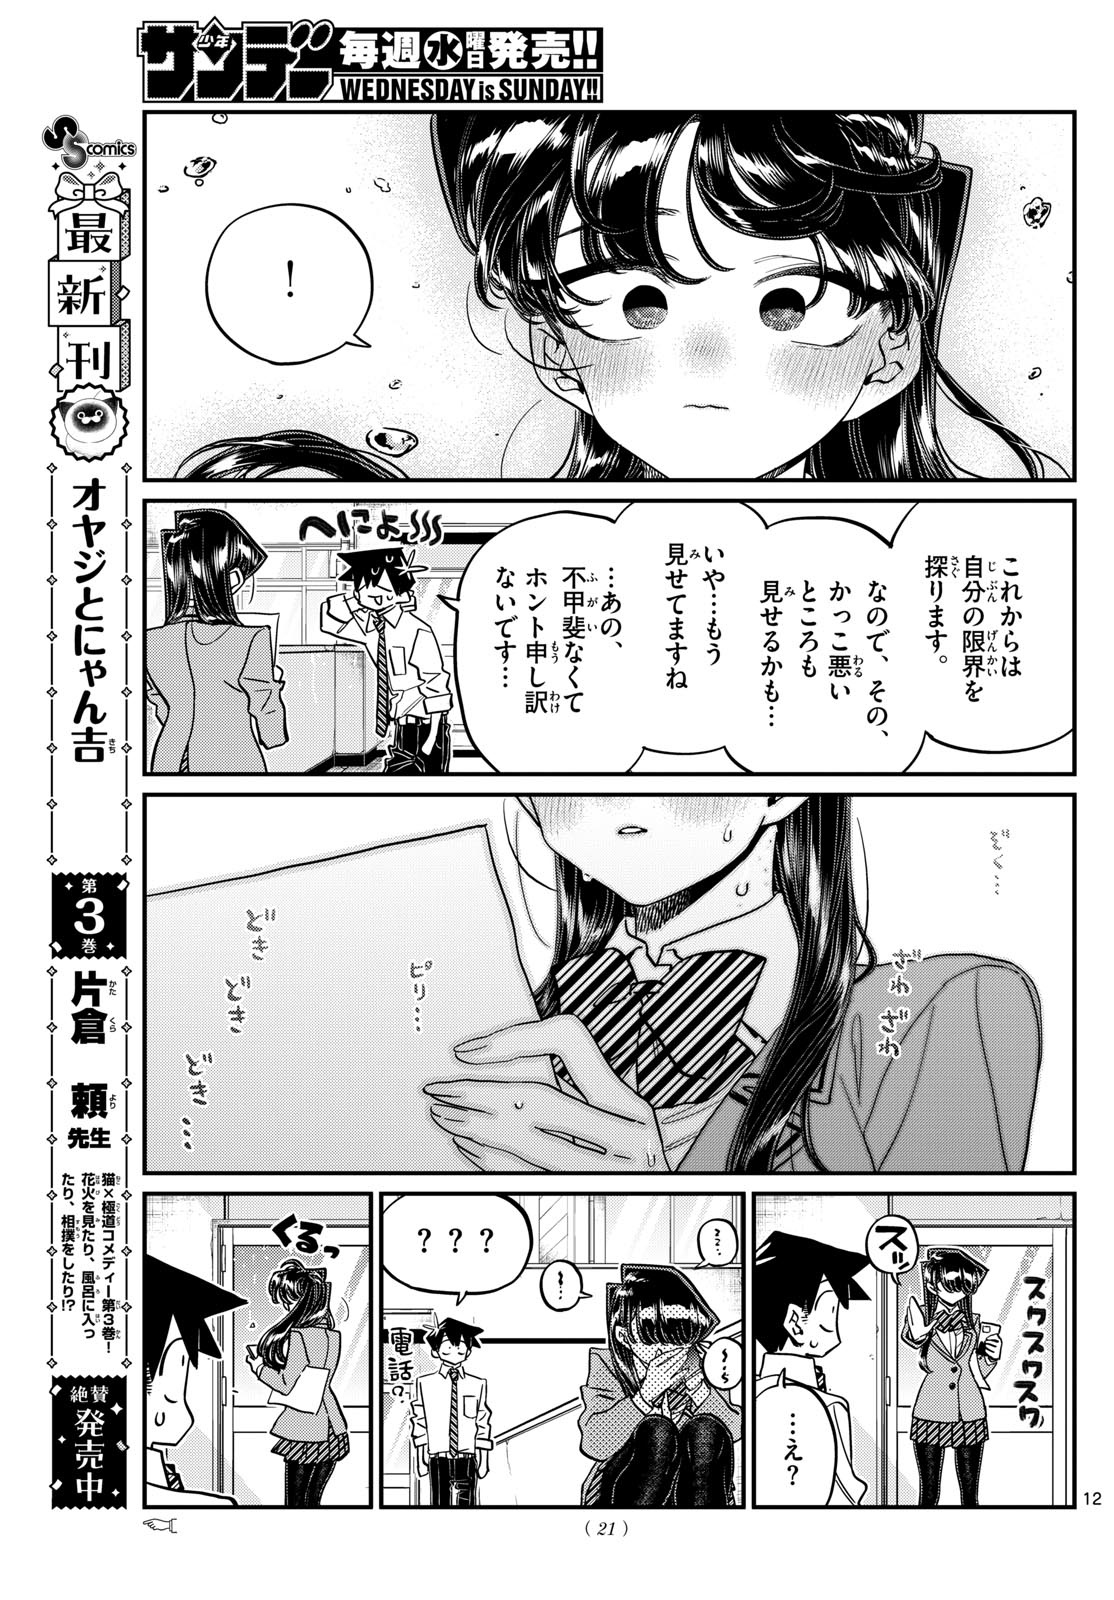 Komi-san wa Komyushou Desu - Chapter 472 - Page 12